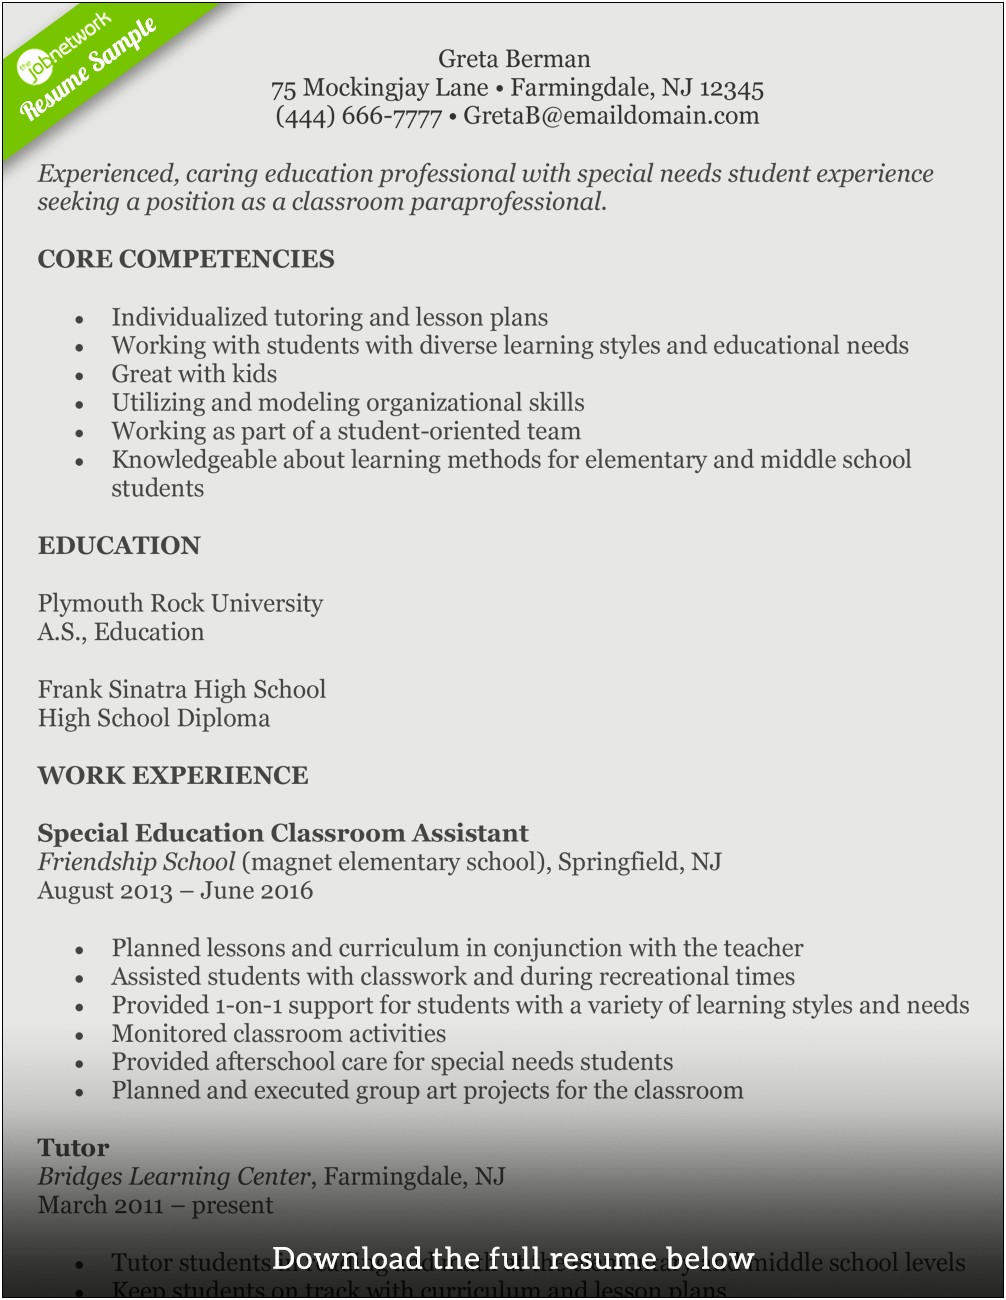 A Resume Sample For Teacher